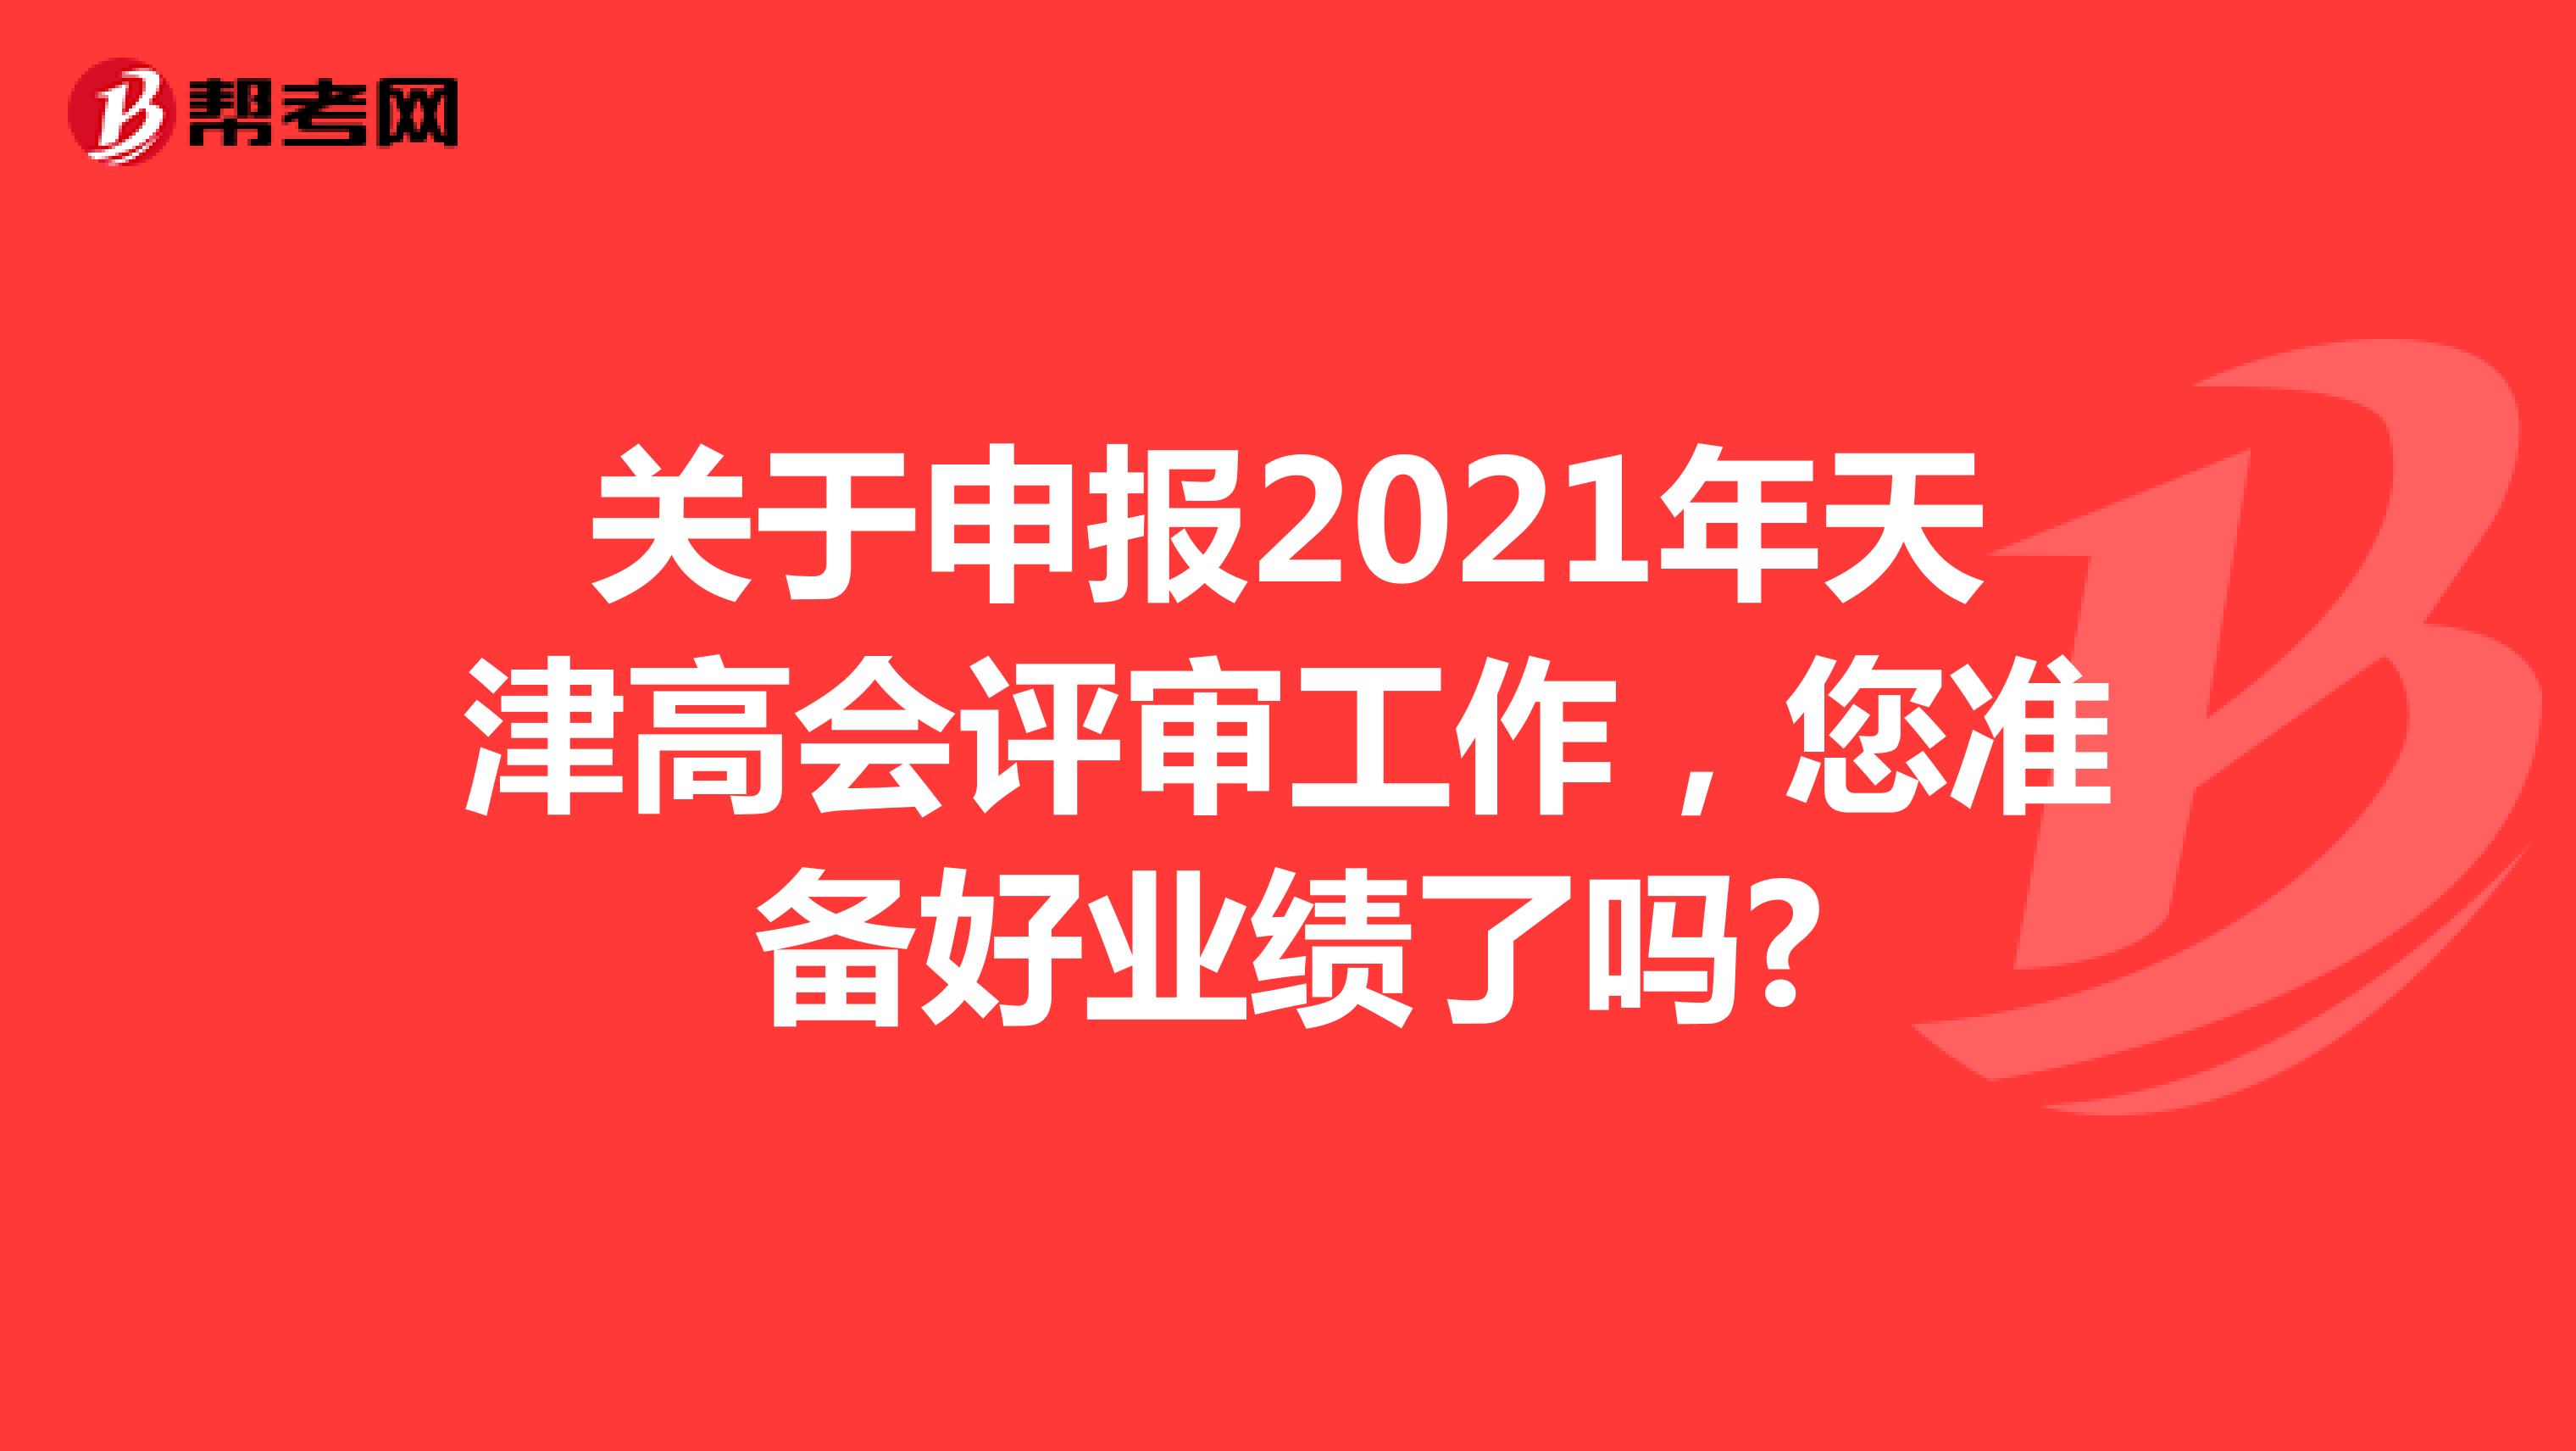 关于申报2021年天津高会评审工作，您准备好业绩了吗?